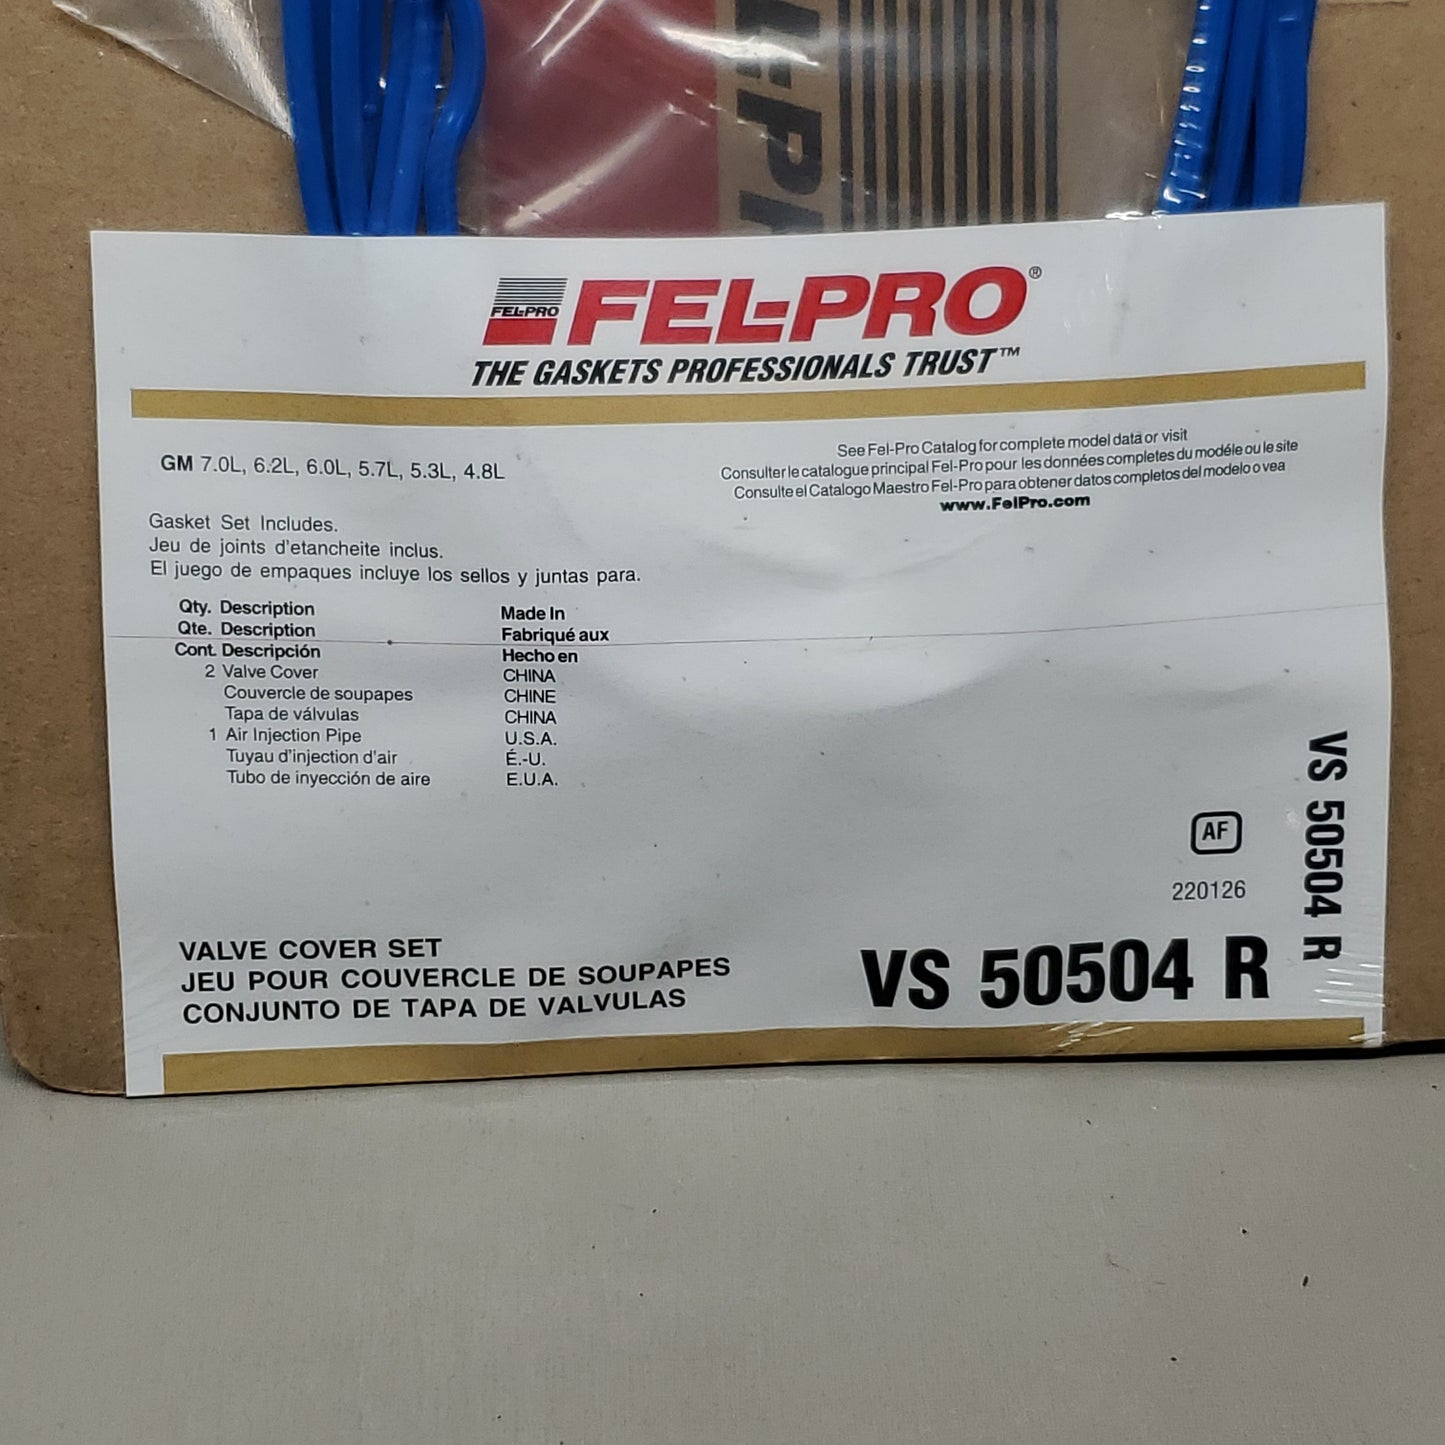 FEL-PRO Valve Cover Set for SaVana Yukon GMC Sierra 1500 VS50504R (new)